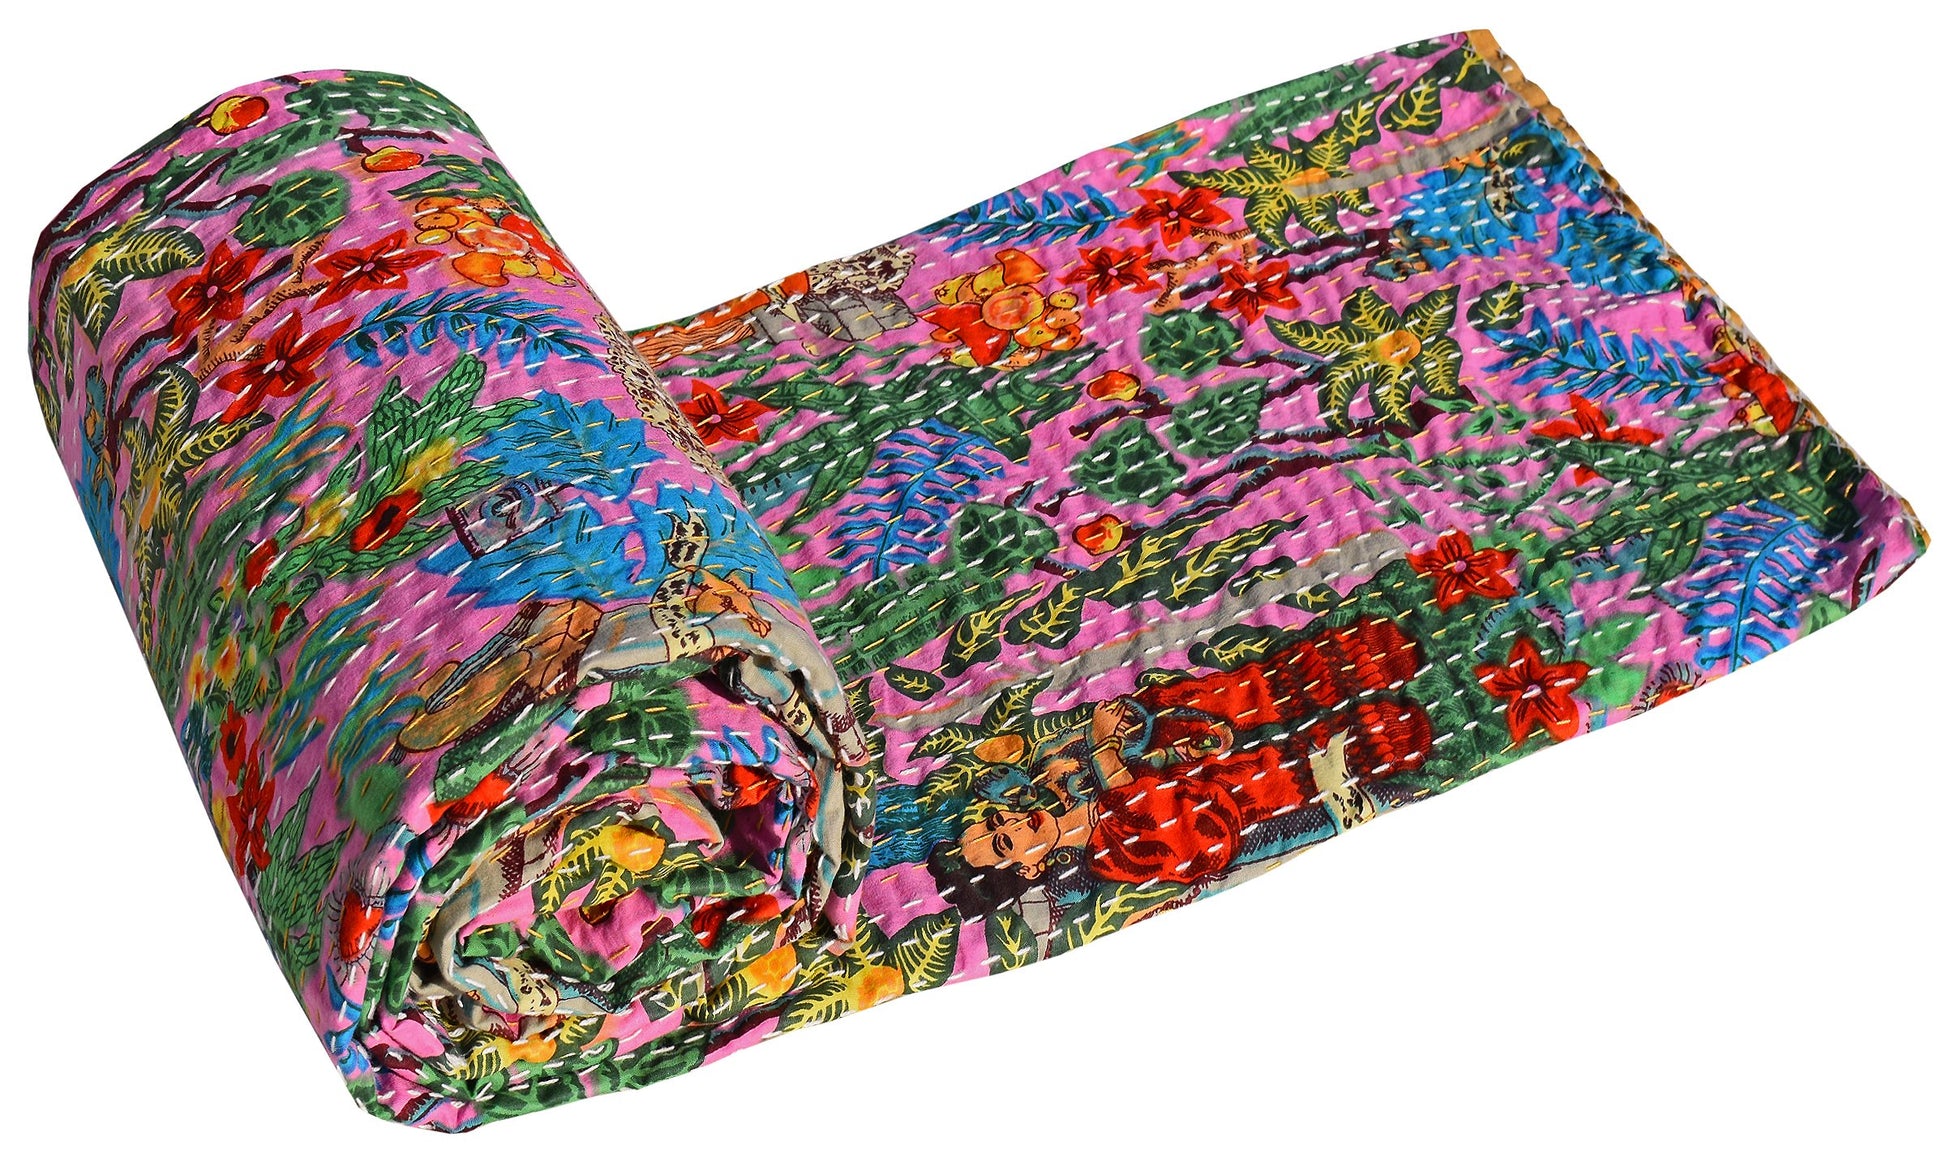 Frida Kahlo Kantha Bedcover Pink - The Teal Thread